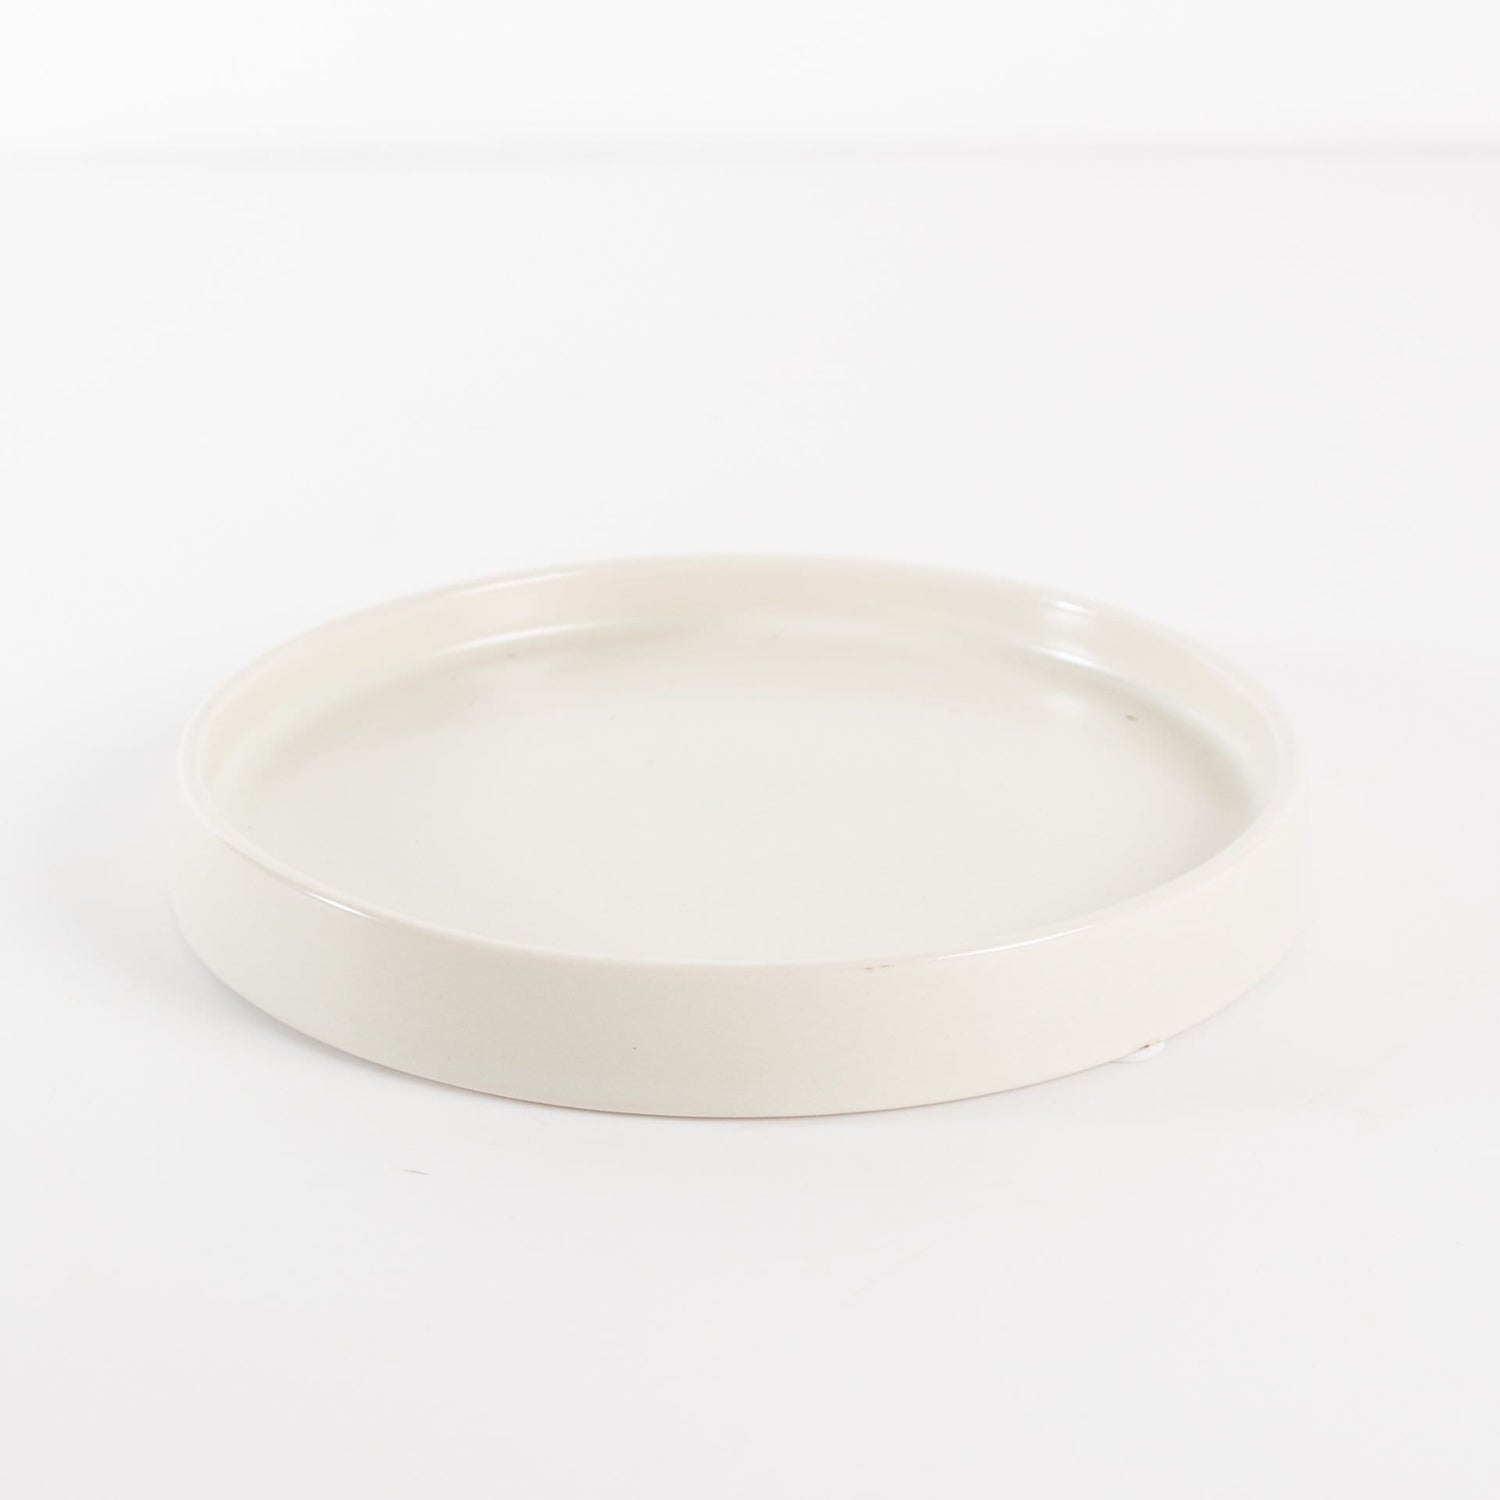 Washington Pottery Company Saucer 6" / Cream Essential Saucer